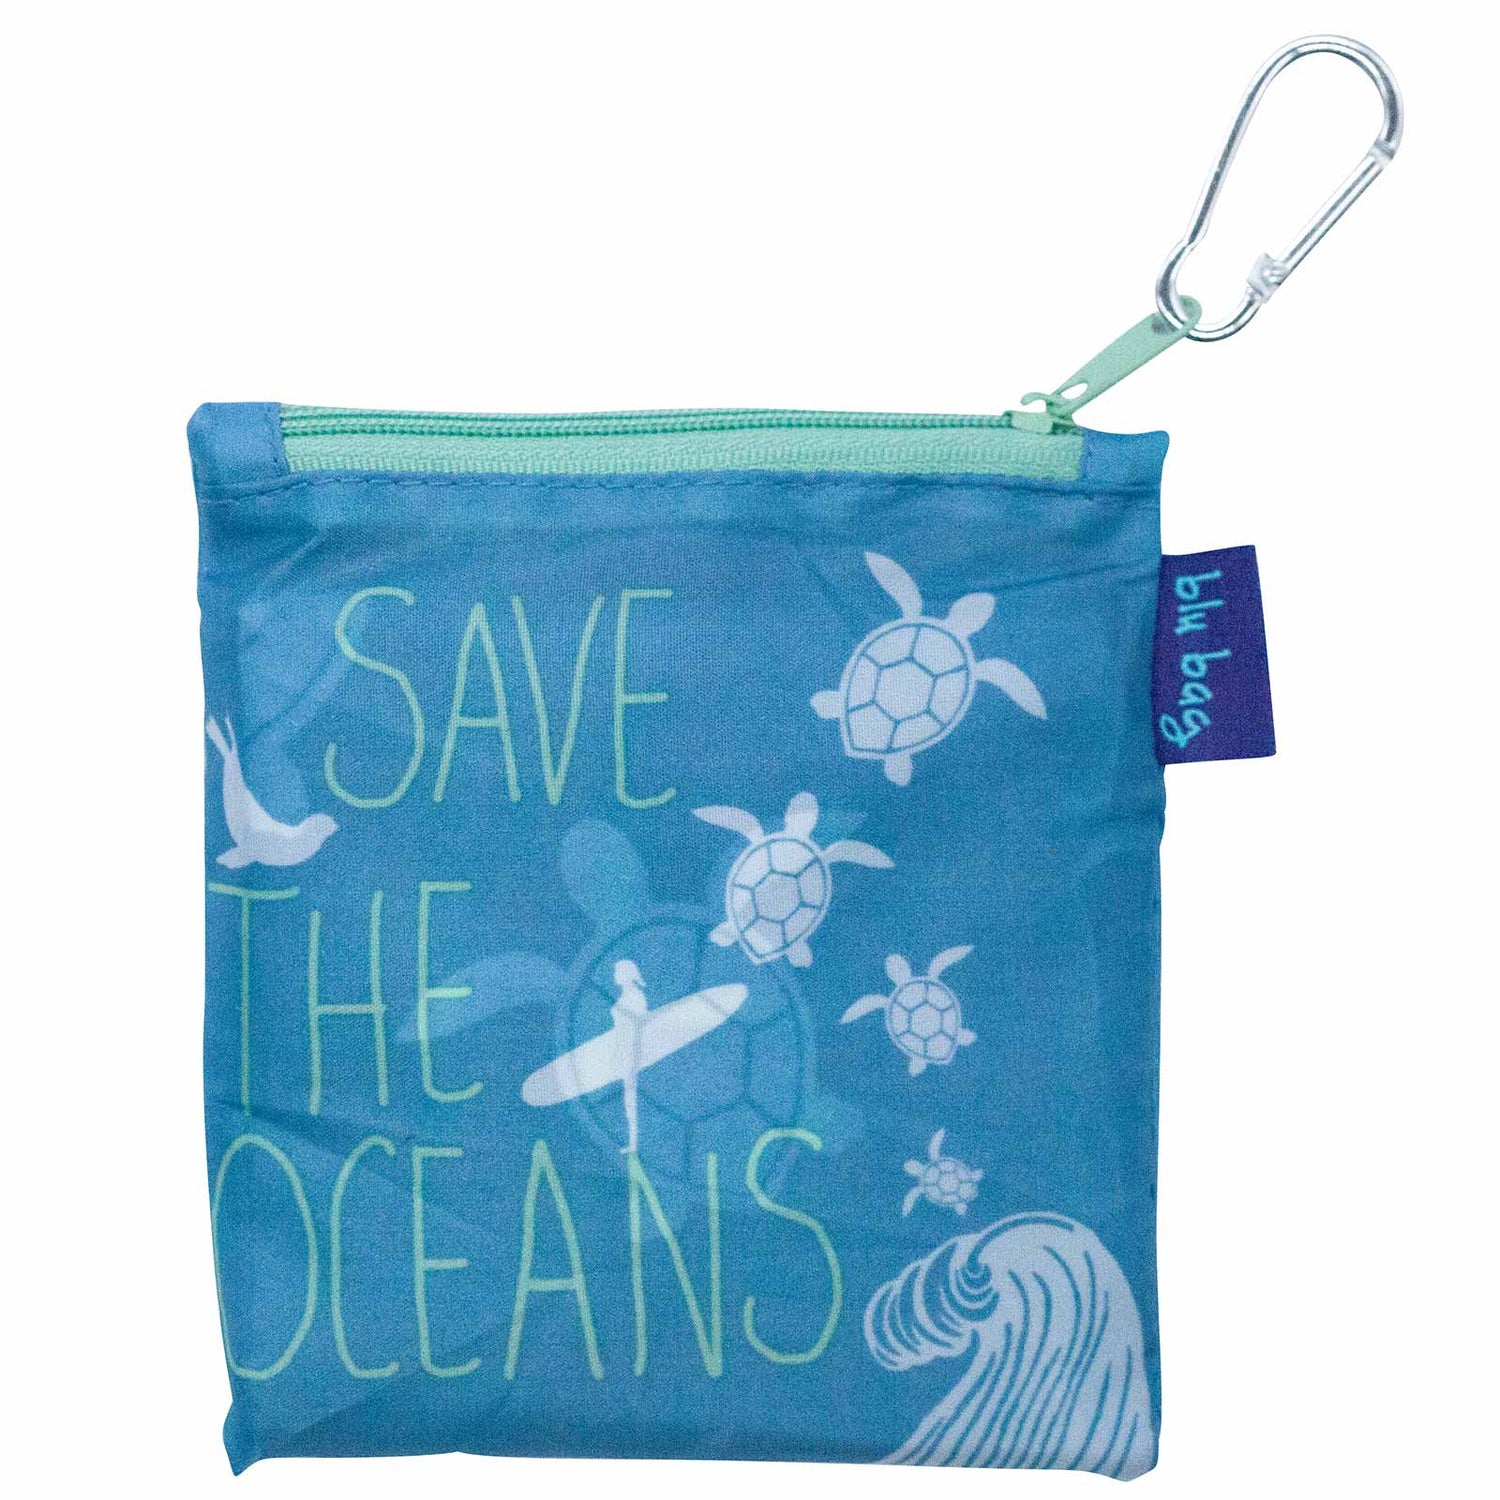 Save the Ocean Reusable Shopping Bag-Machine washable Reusable Shopping Bag - rockflowerpaper